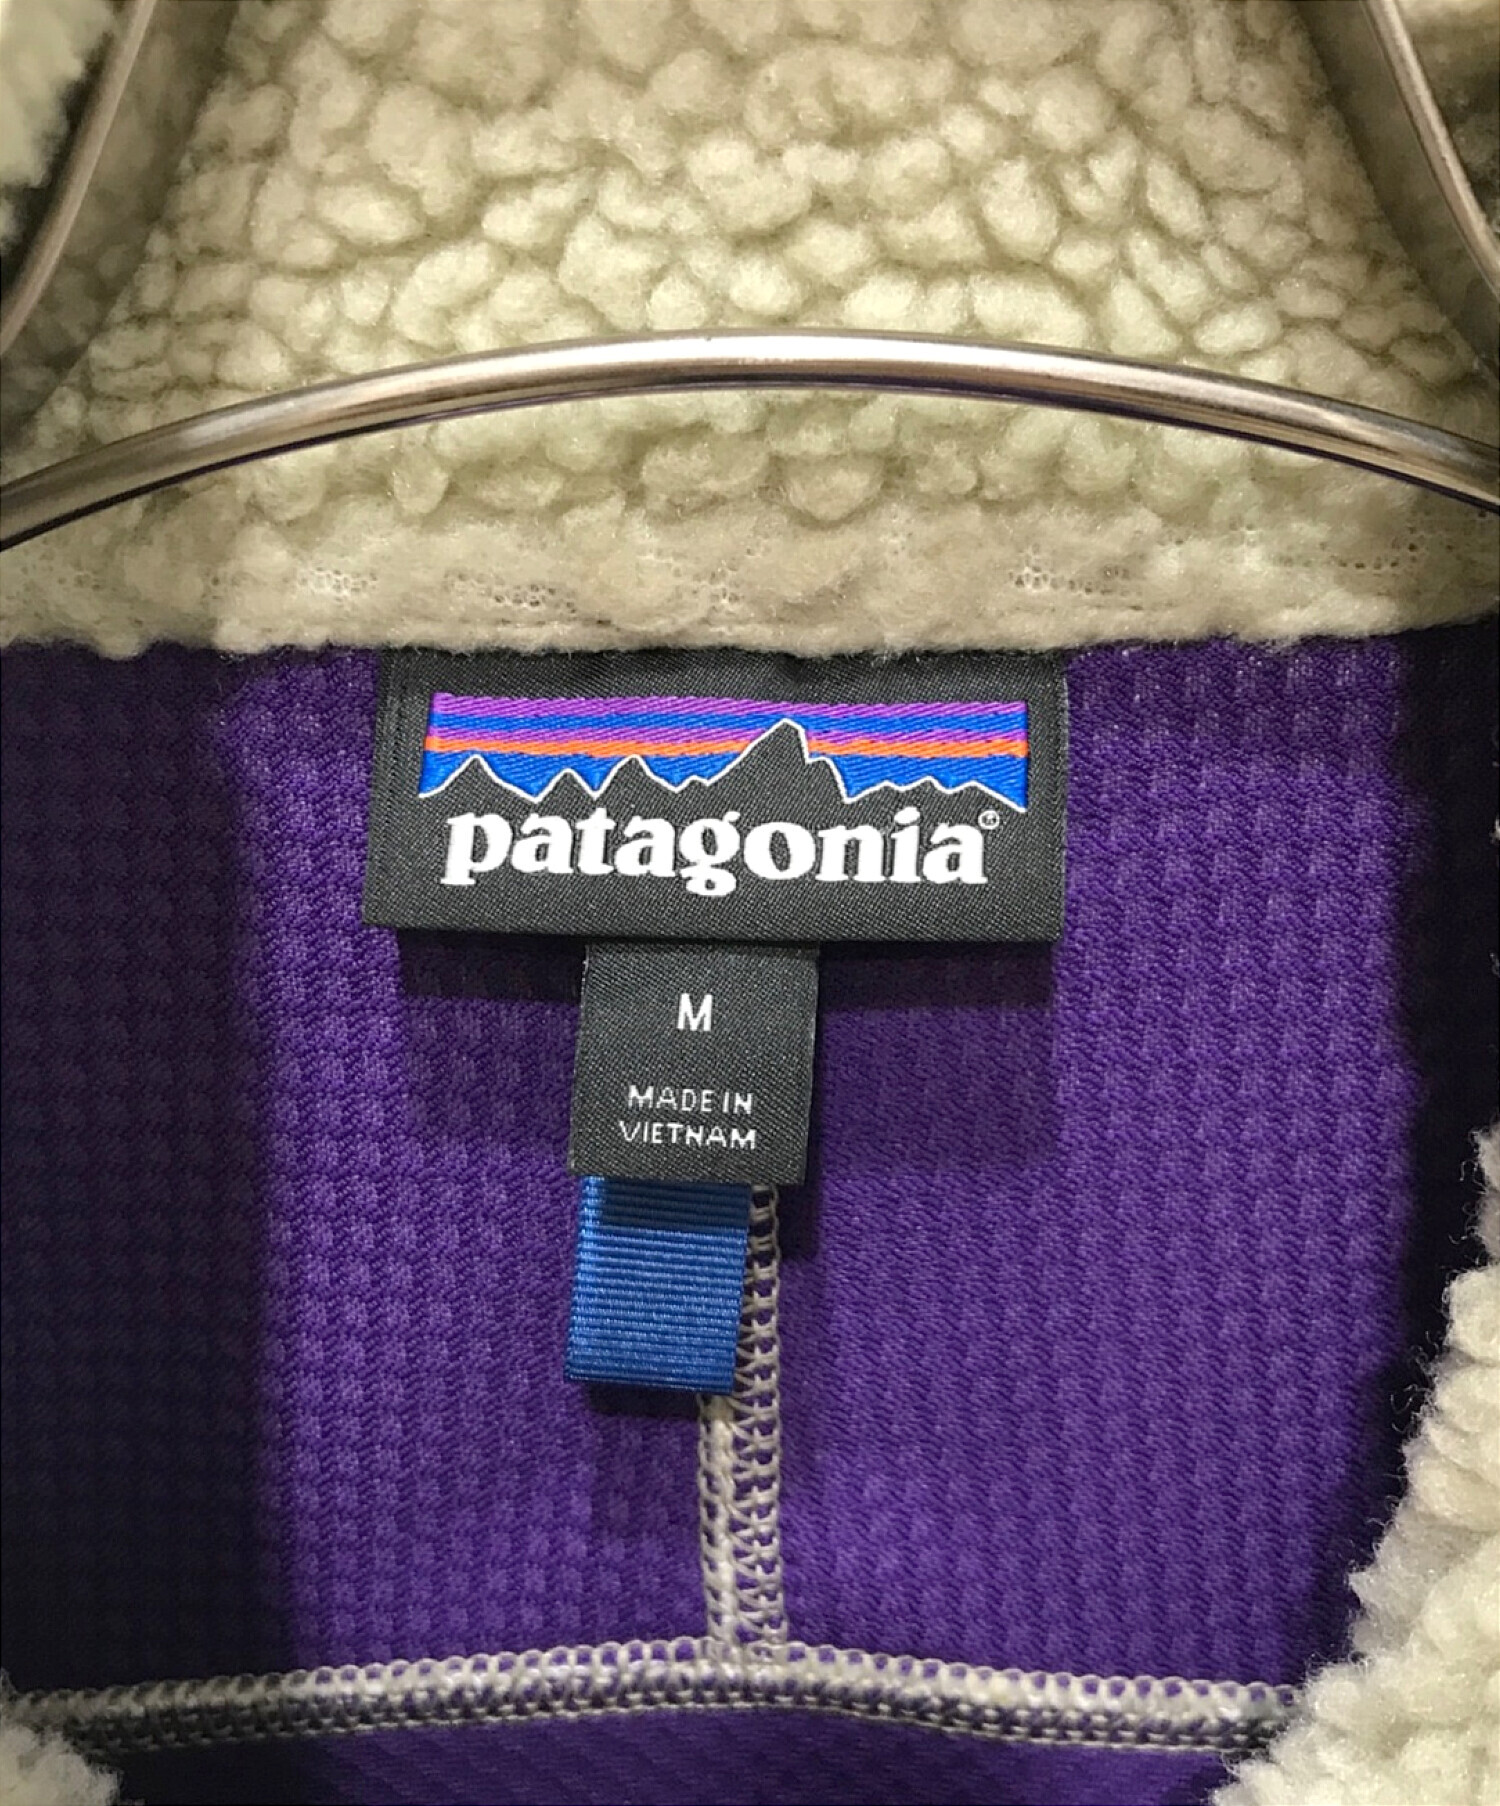 Patagonia (パタゴニア) クラシック・レトロX・ベスト ナチュラル×パープル サイズ:M